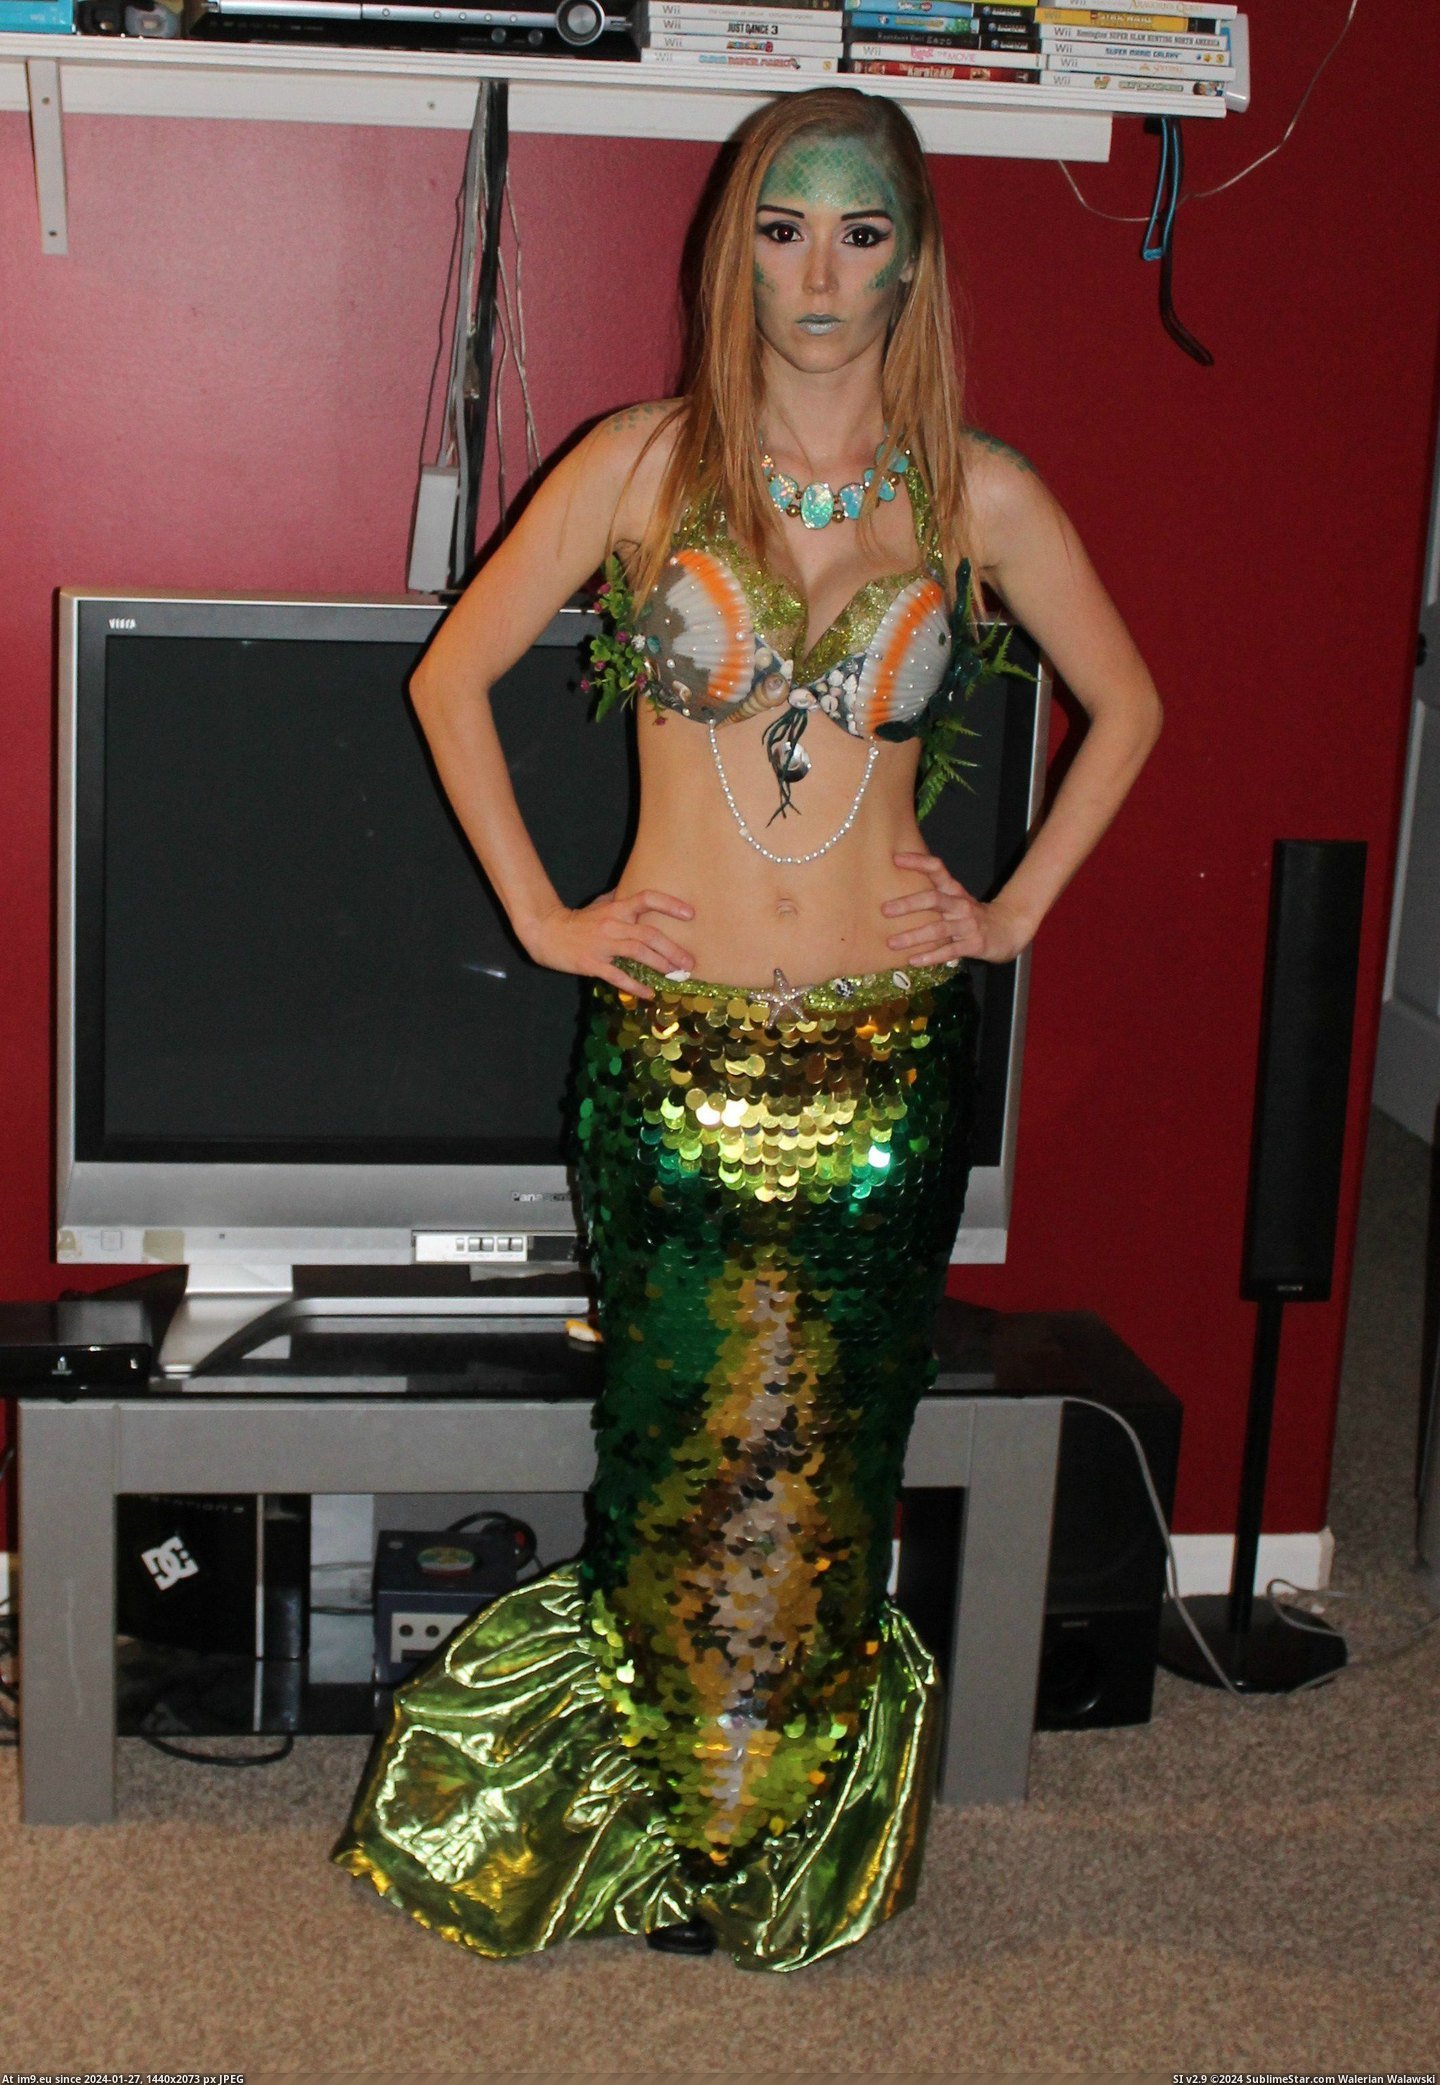 #Costume #Homemade #Mermaid [Pics] My homemade mermaid costume! 1 Pic. (Bild von album My r/PICS favs))